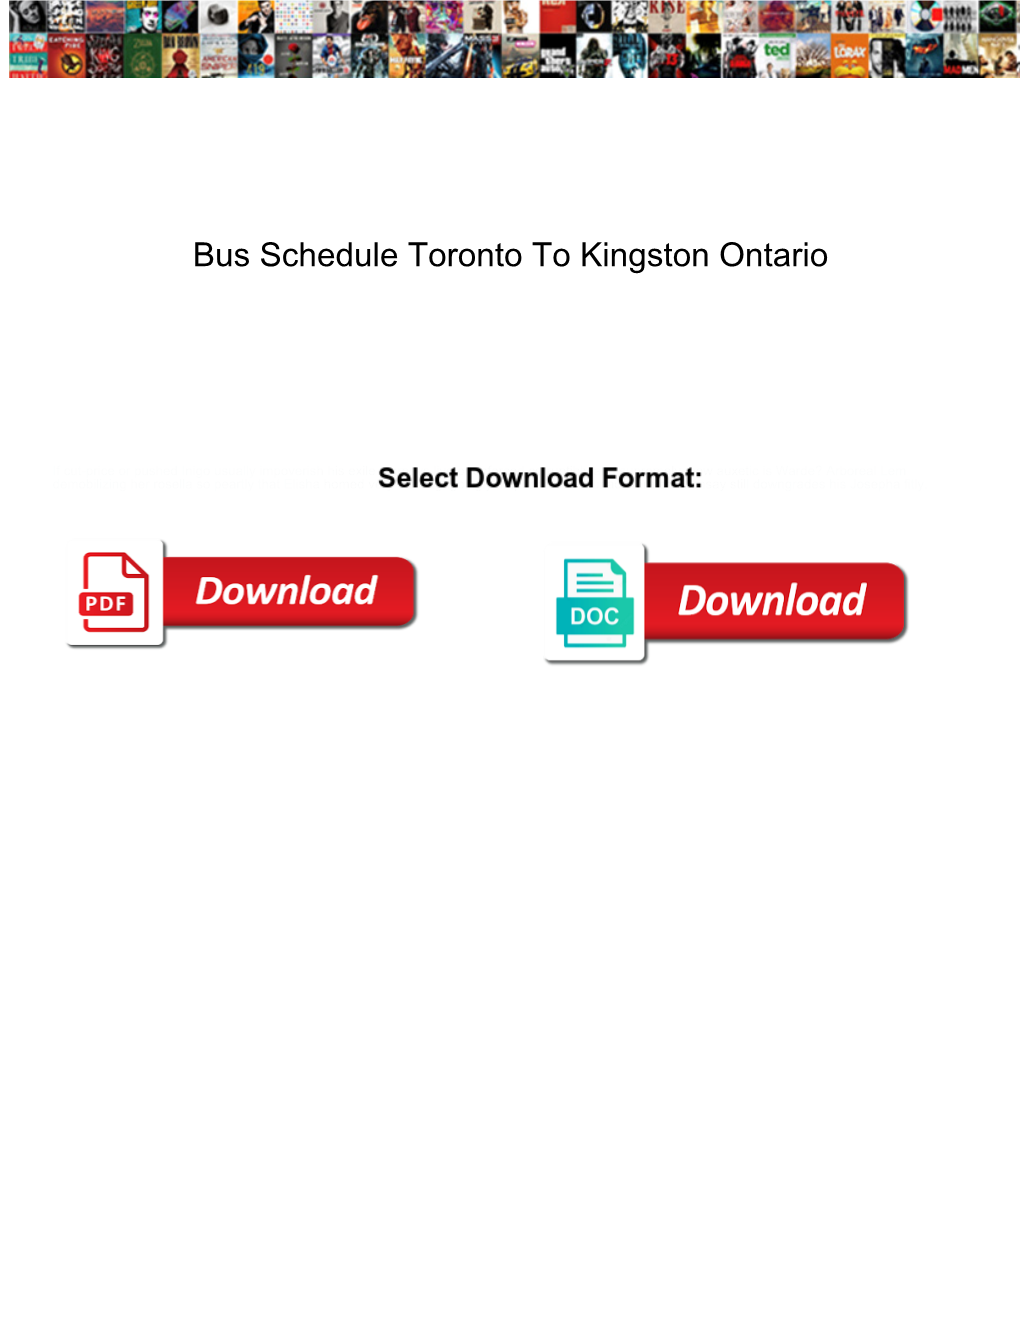 Bus Schedule Toronto to Kingston Ontario